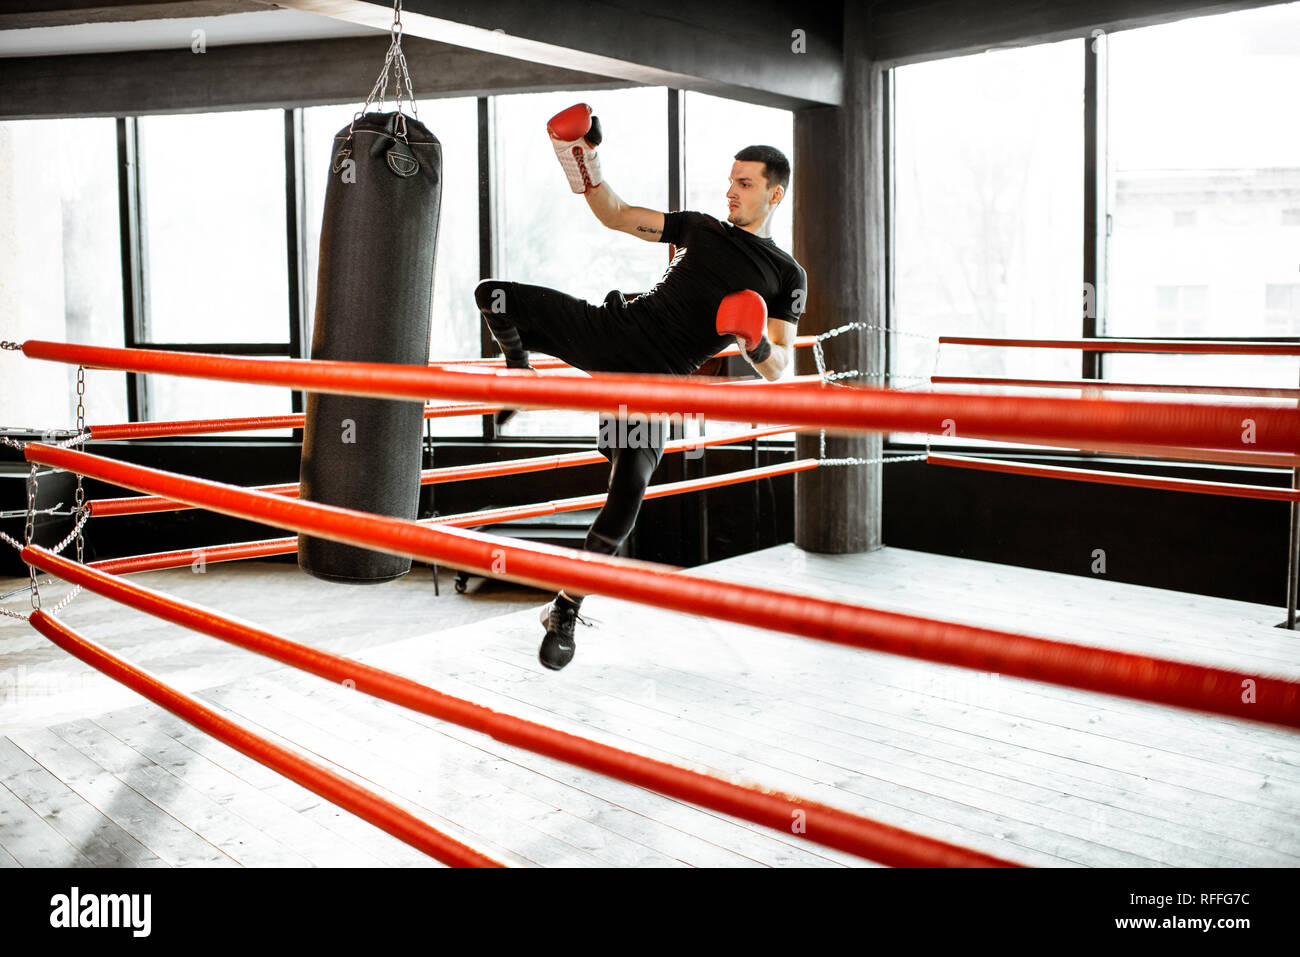 Athletischer Mann kicking Boxsack mit Bein, training Kickboxen im Boxring  an der Turnhalle Stockfotografie - Alamy